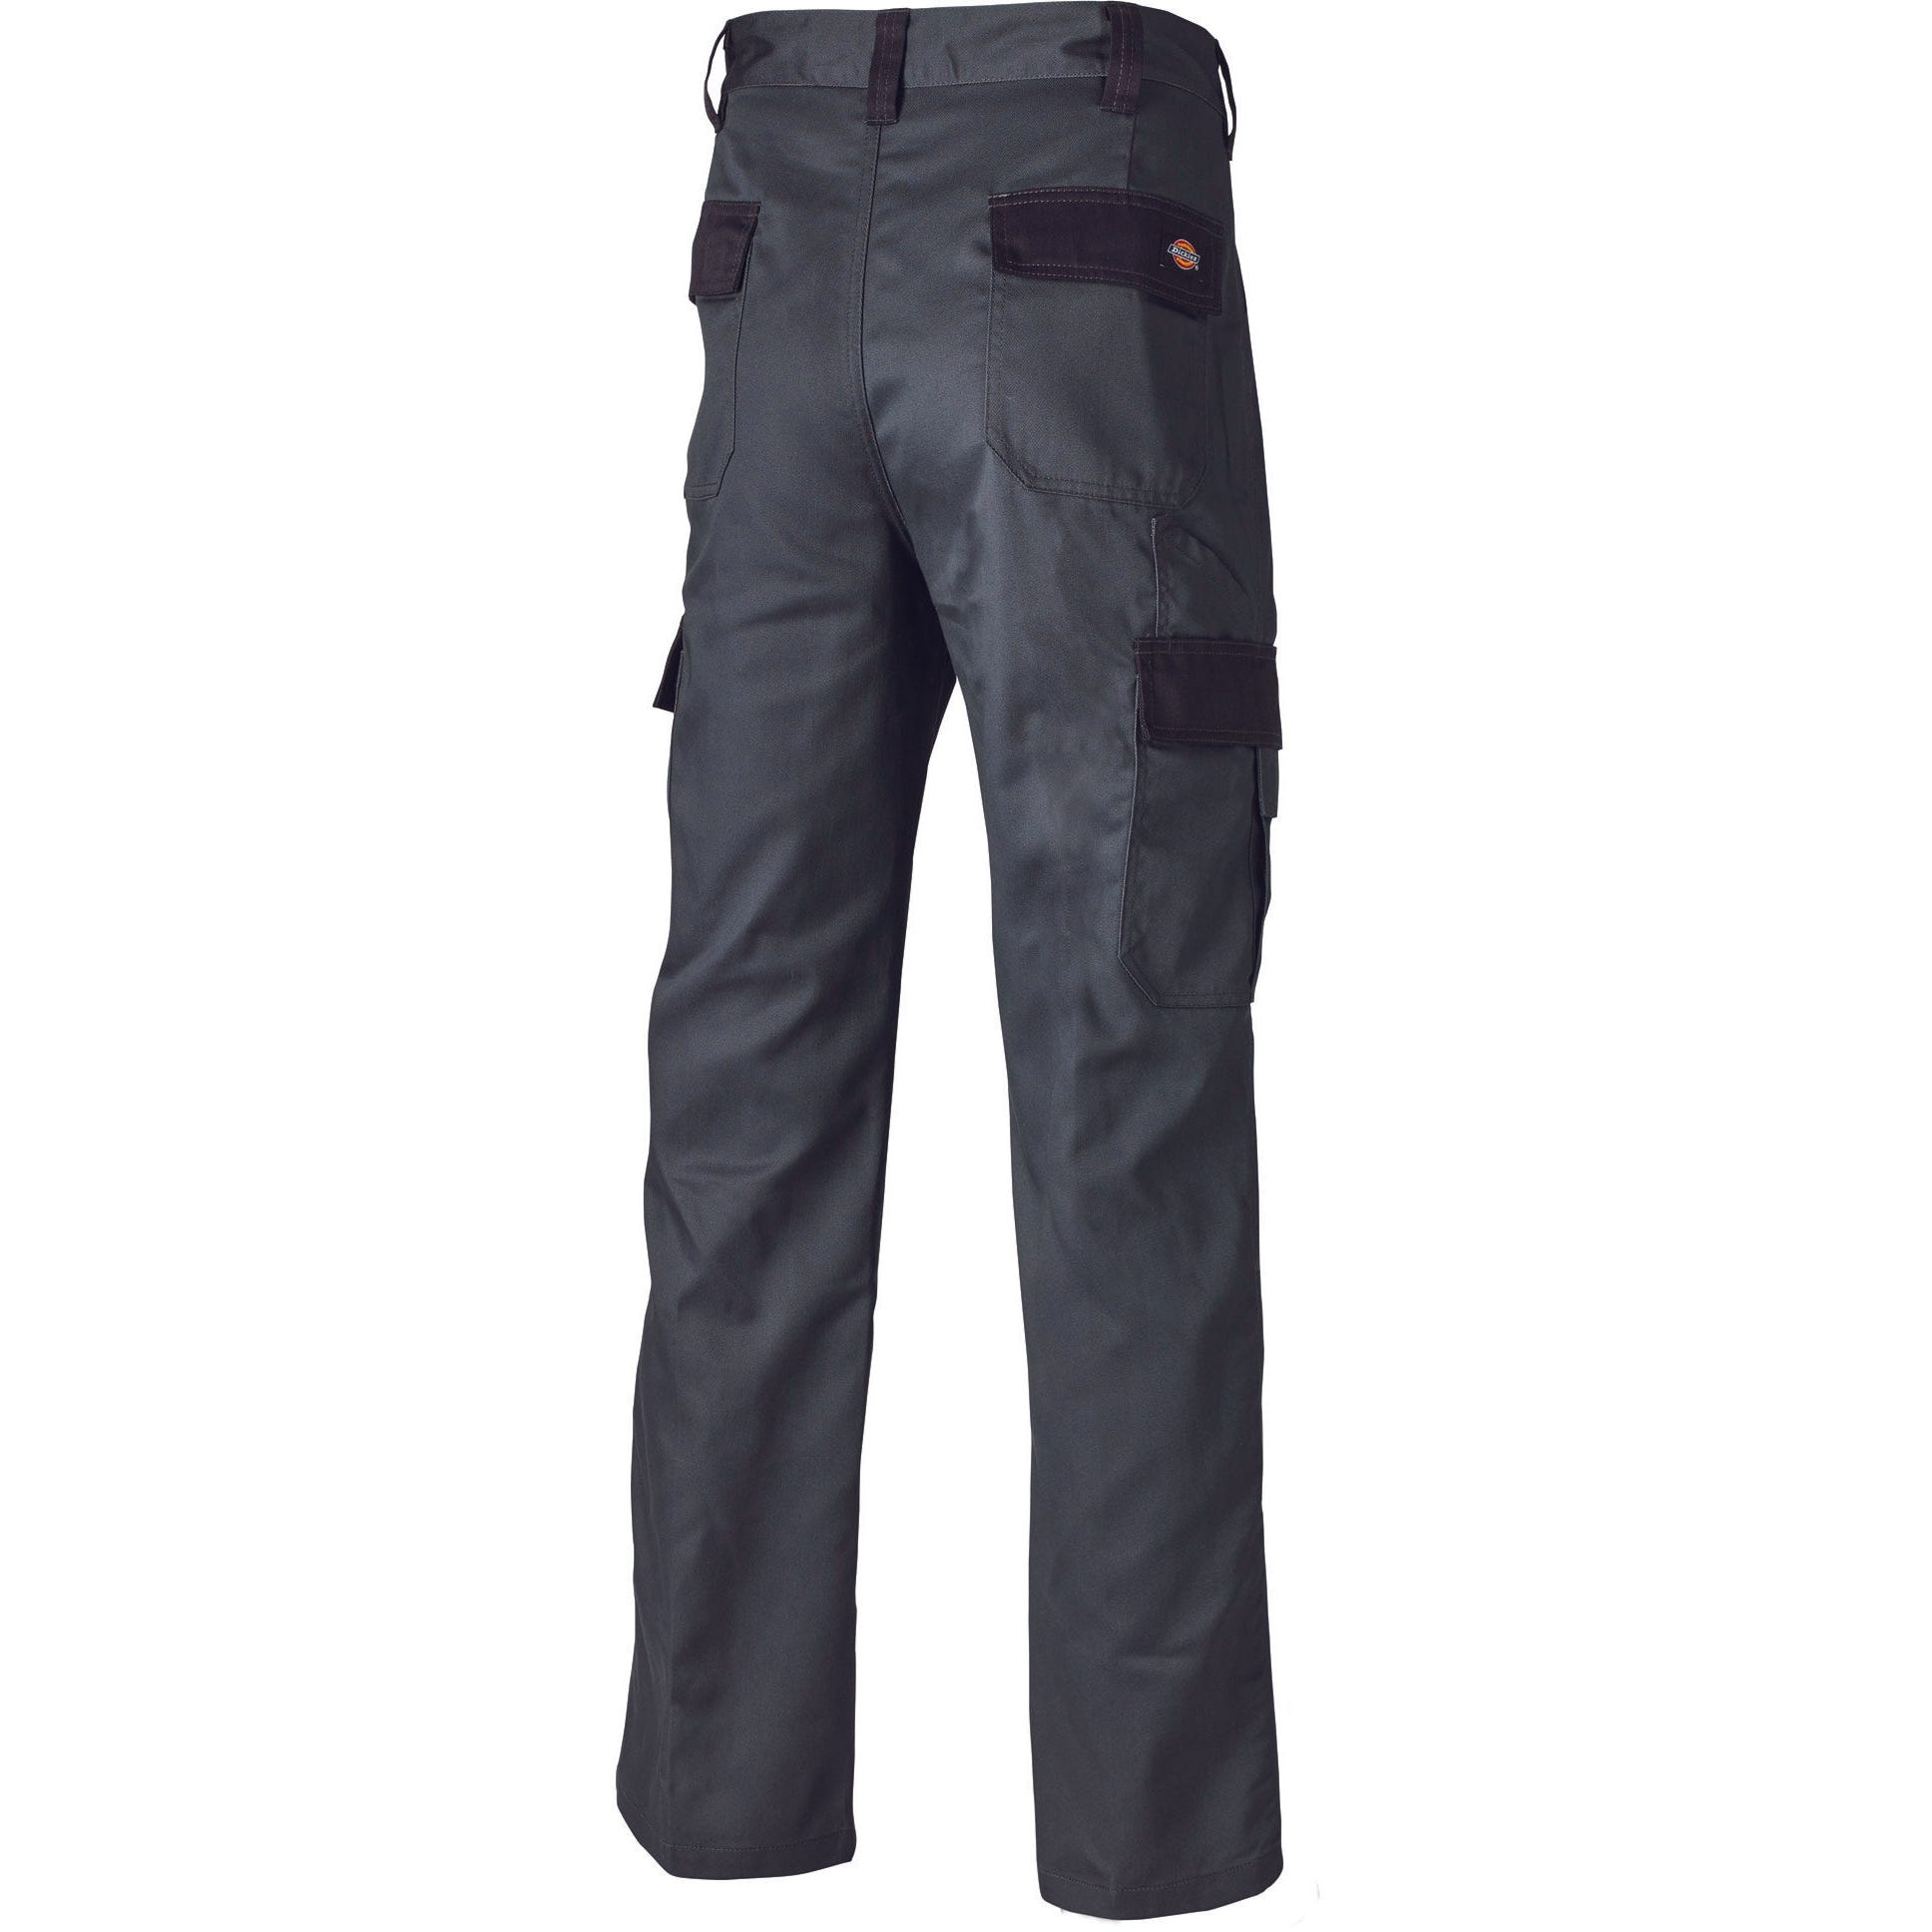 Pantalon Everyday Gris et noir- Dickies - Taille 50 6